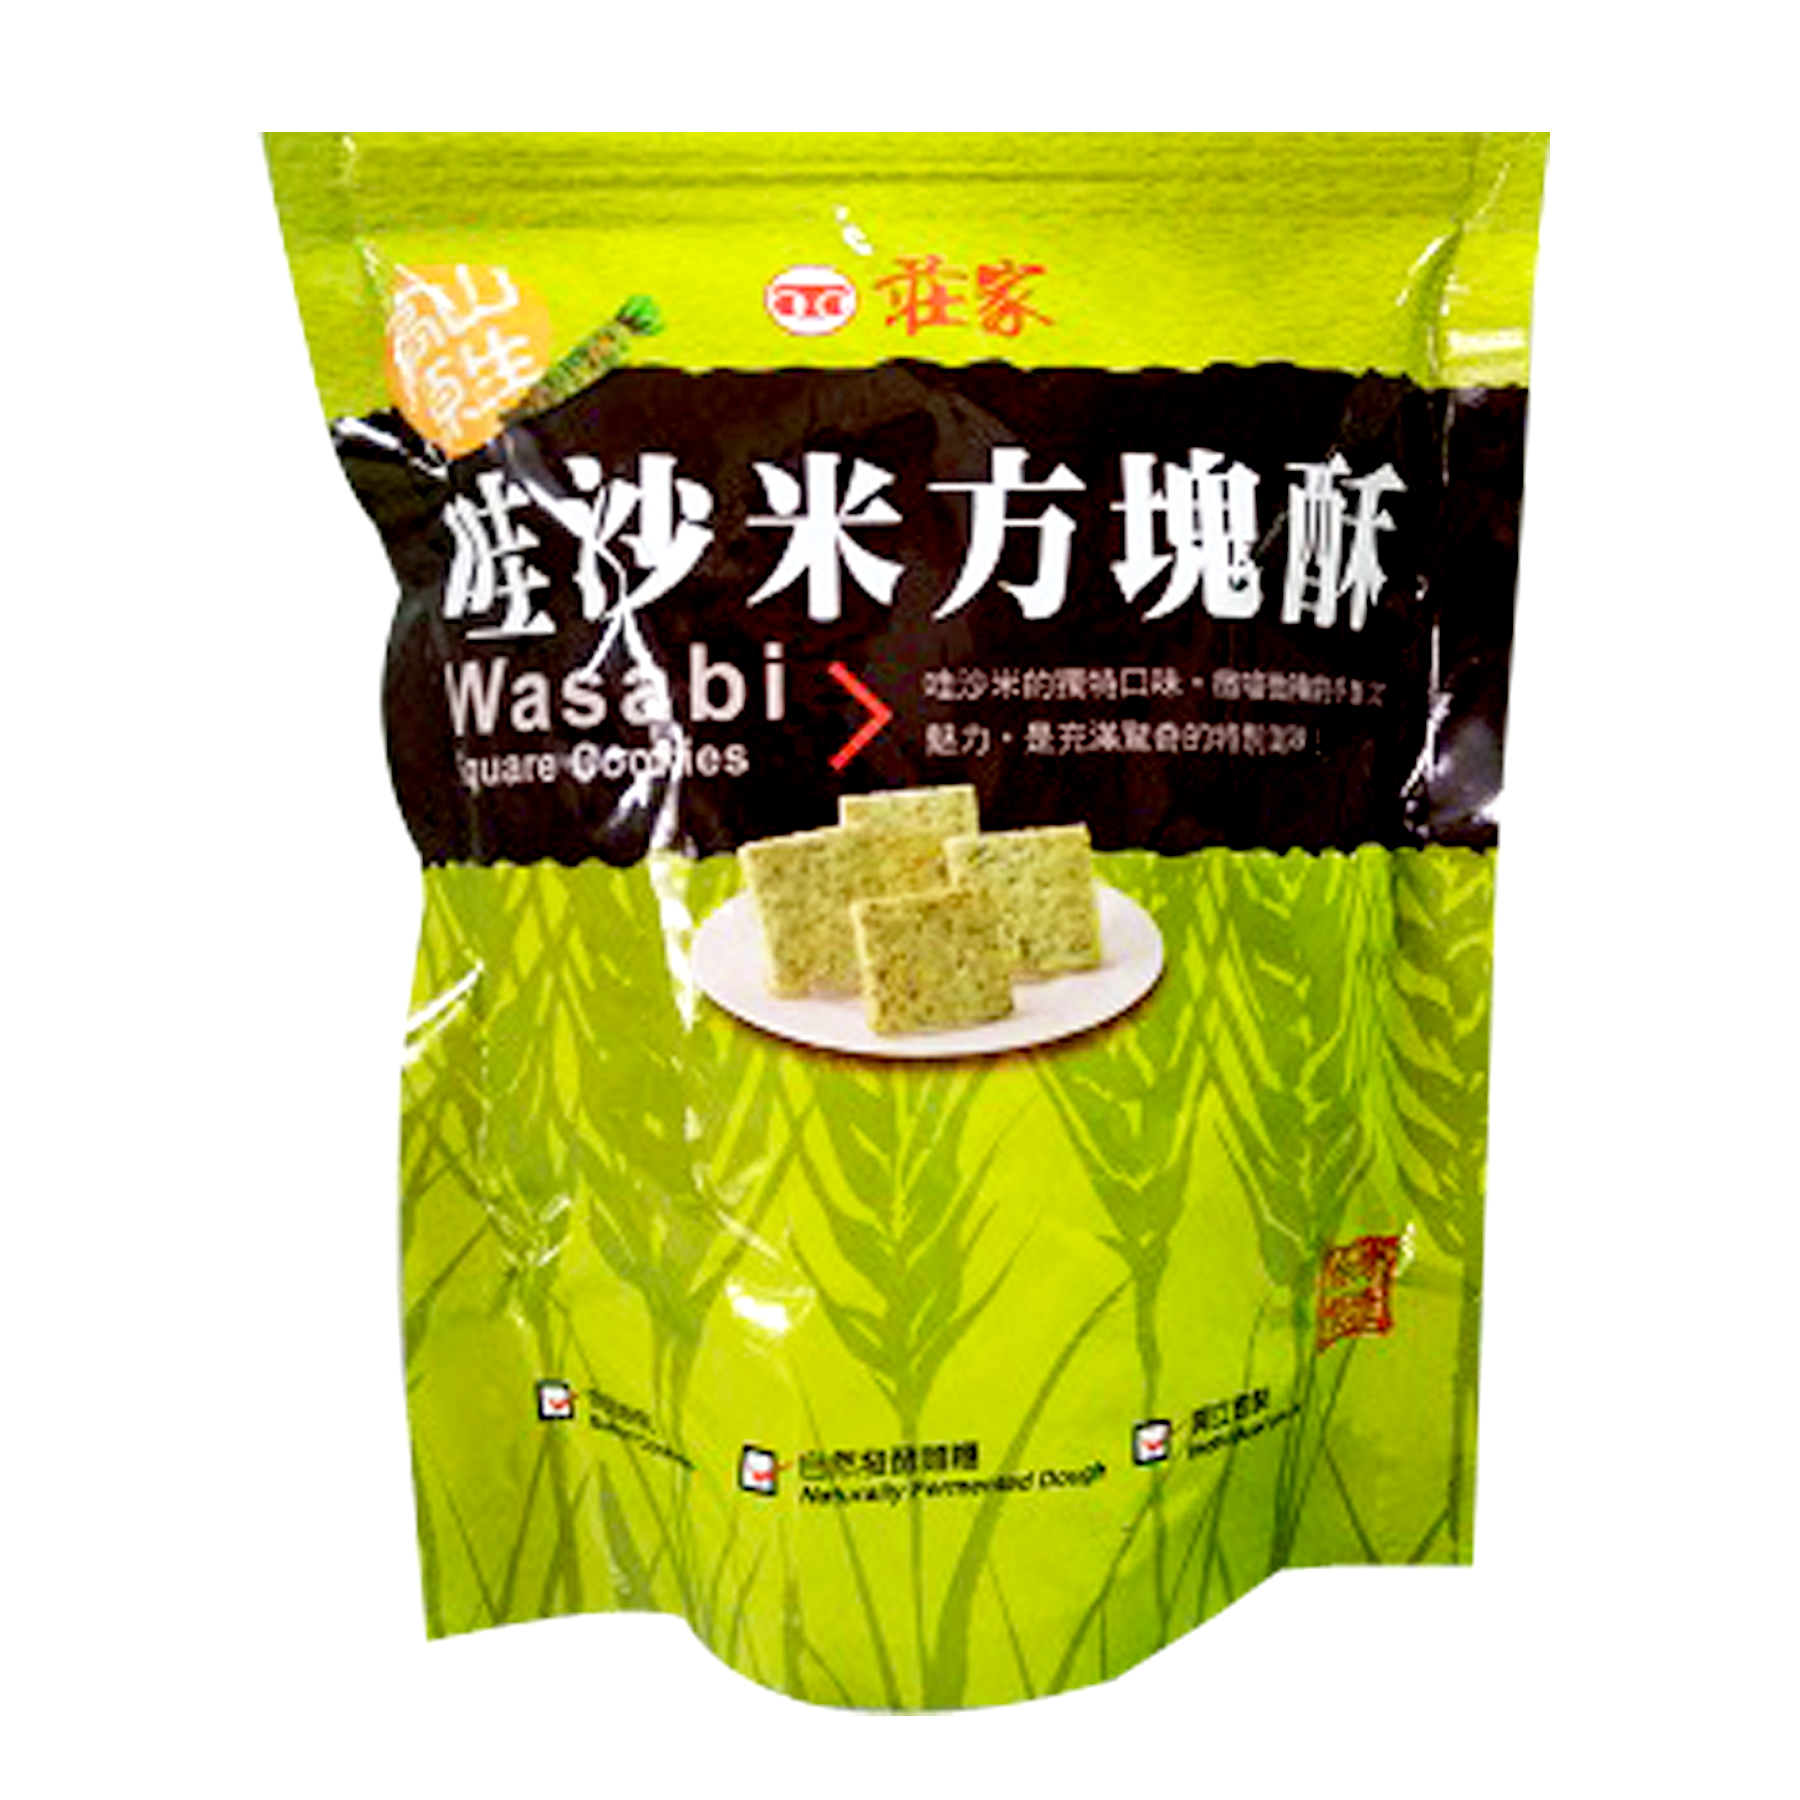 Image Wasabi Square Cookies 庄家-哇沙米方块酥 160 grams